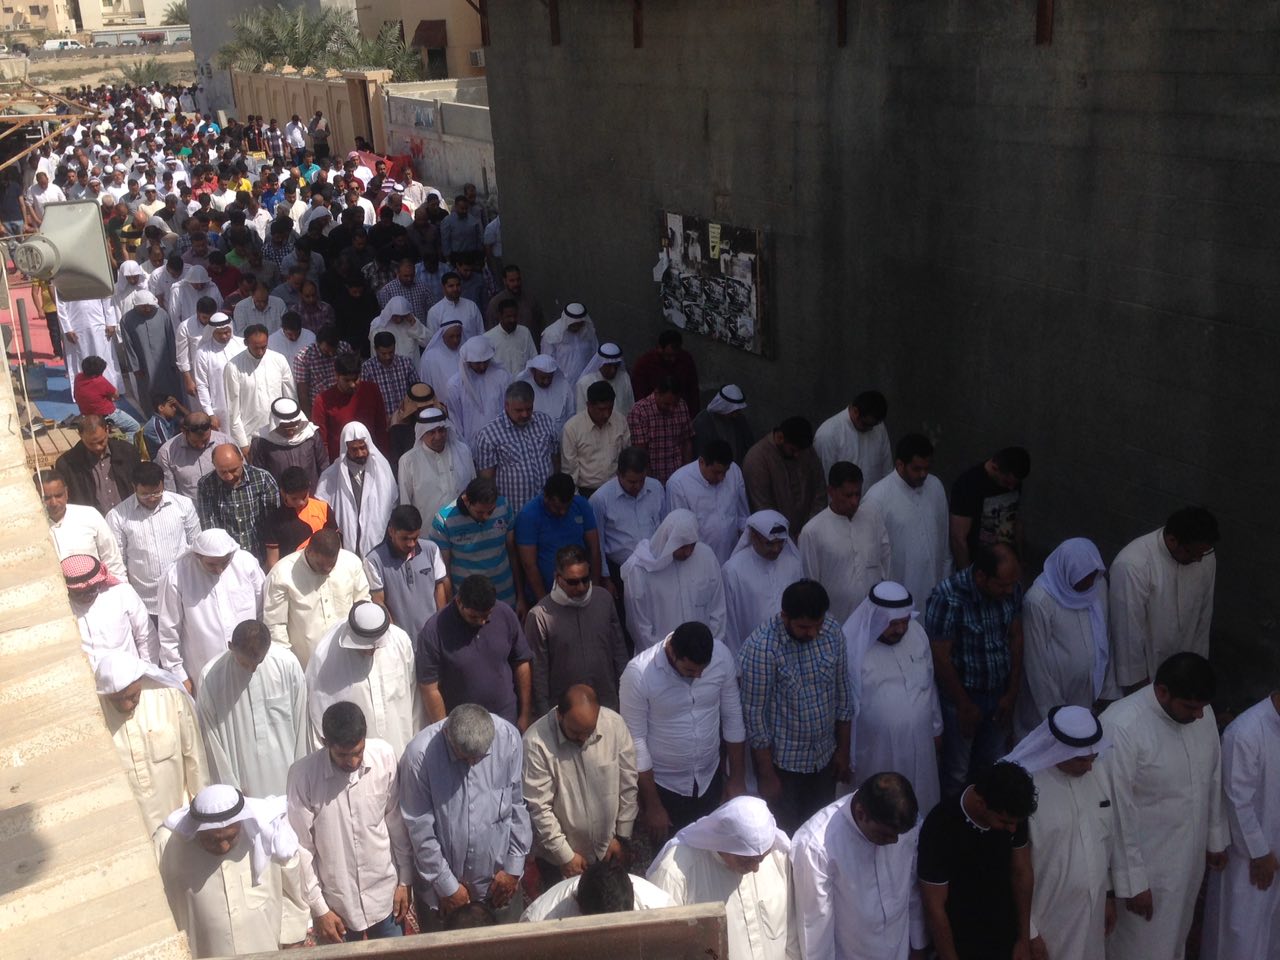 #البحرين: حضور حاشد في الصلاة المركزية بـ #الدراز بعد فشل السلطة في منعها